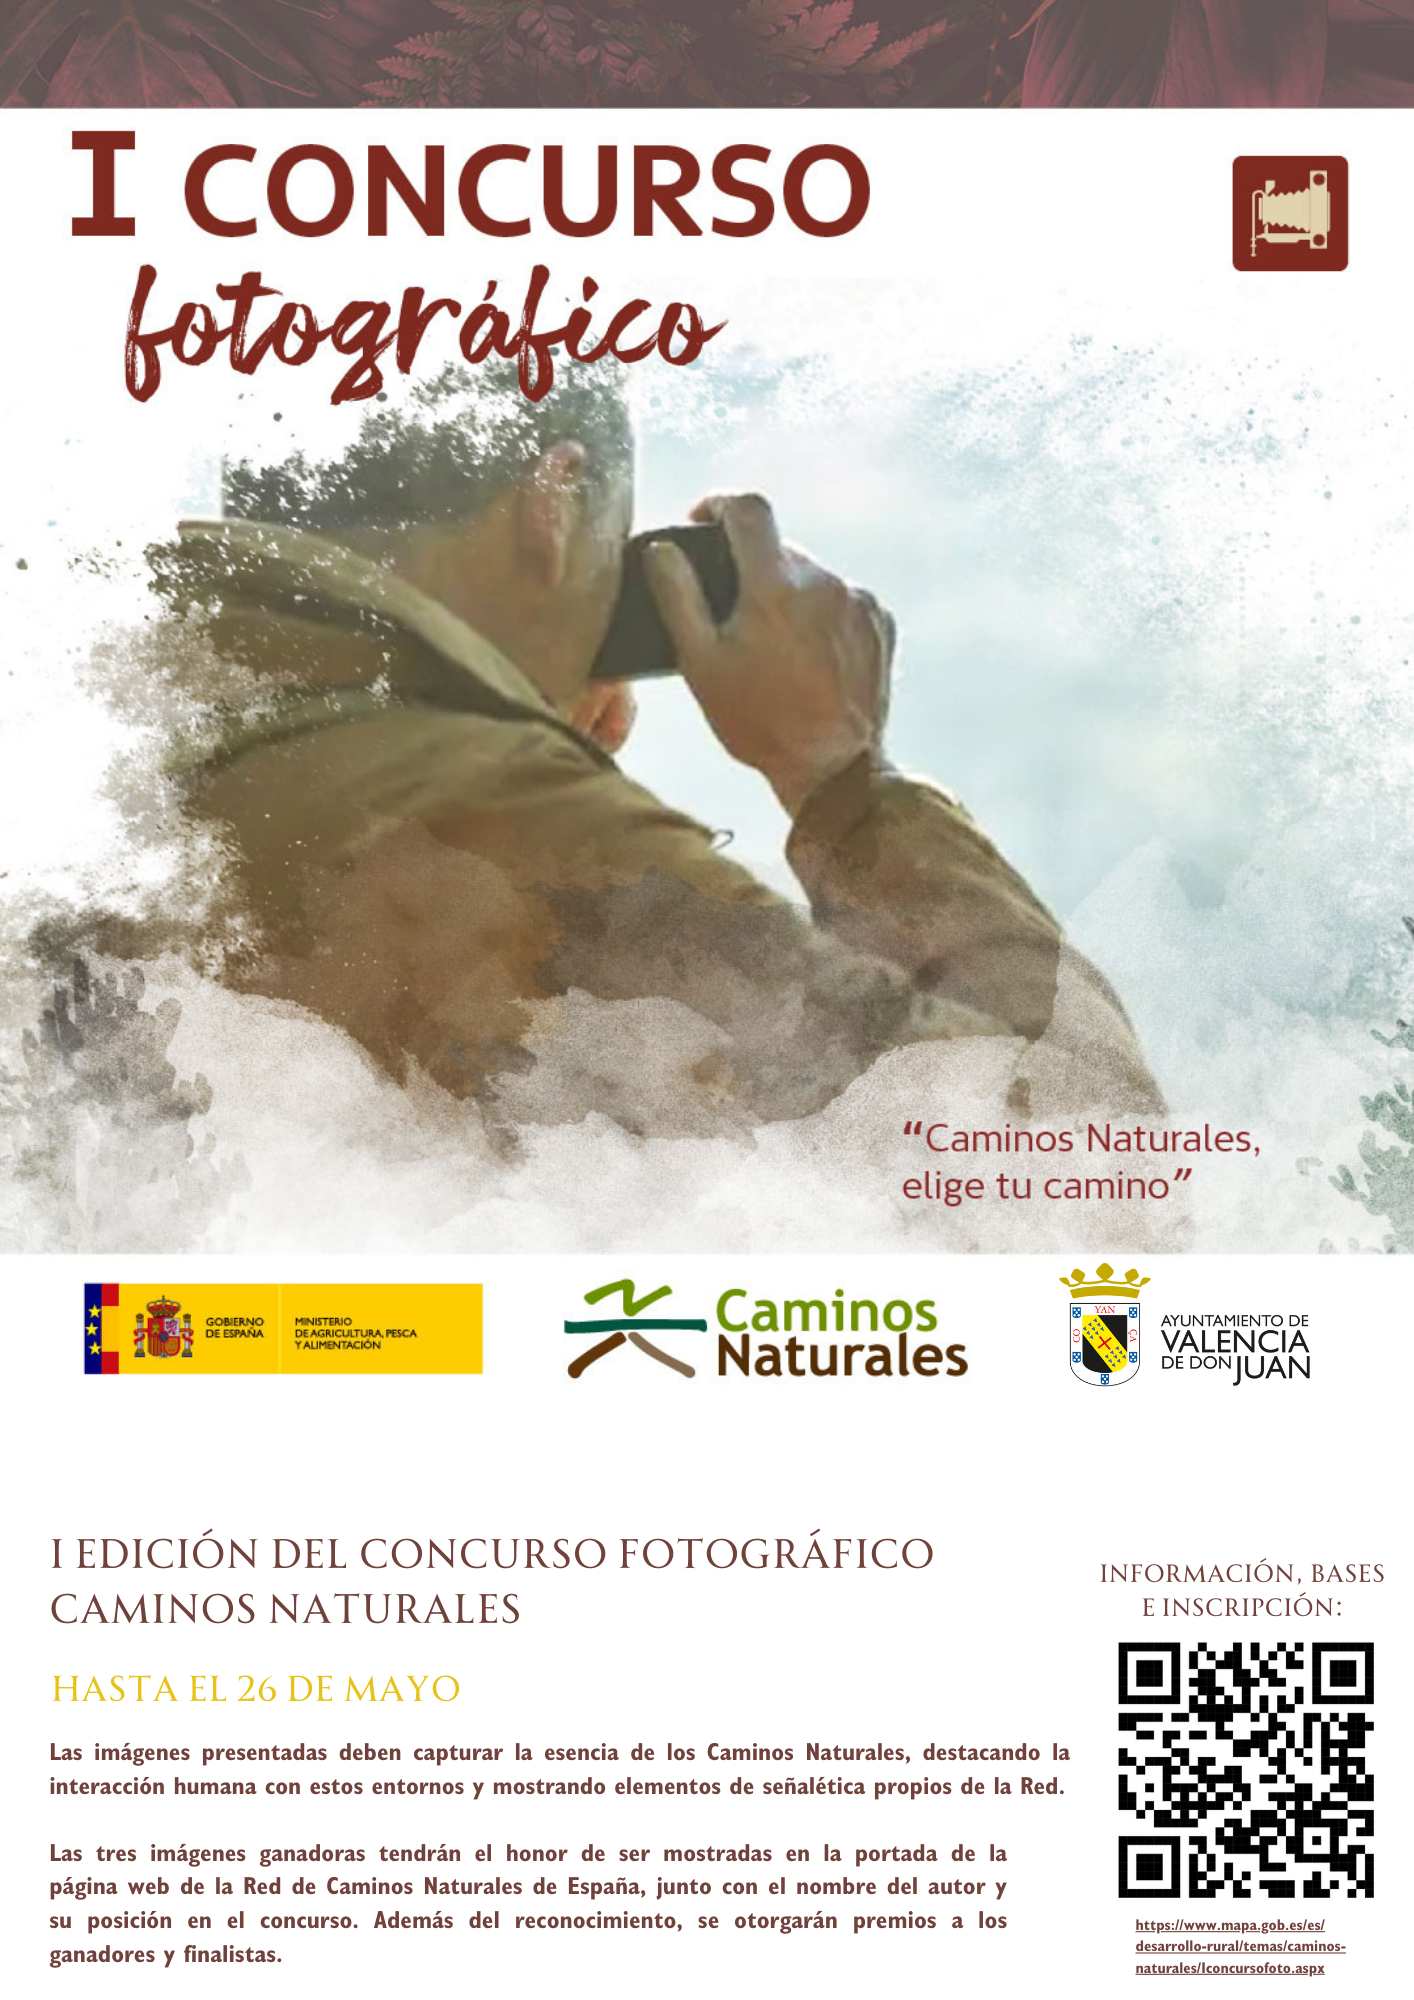 I Edición del Concurso Fotográfico Caminos Naturales